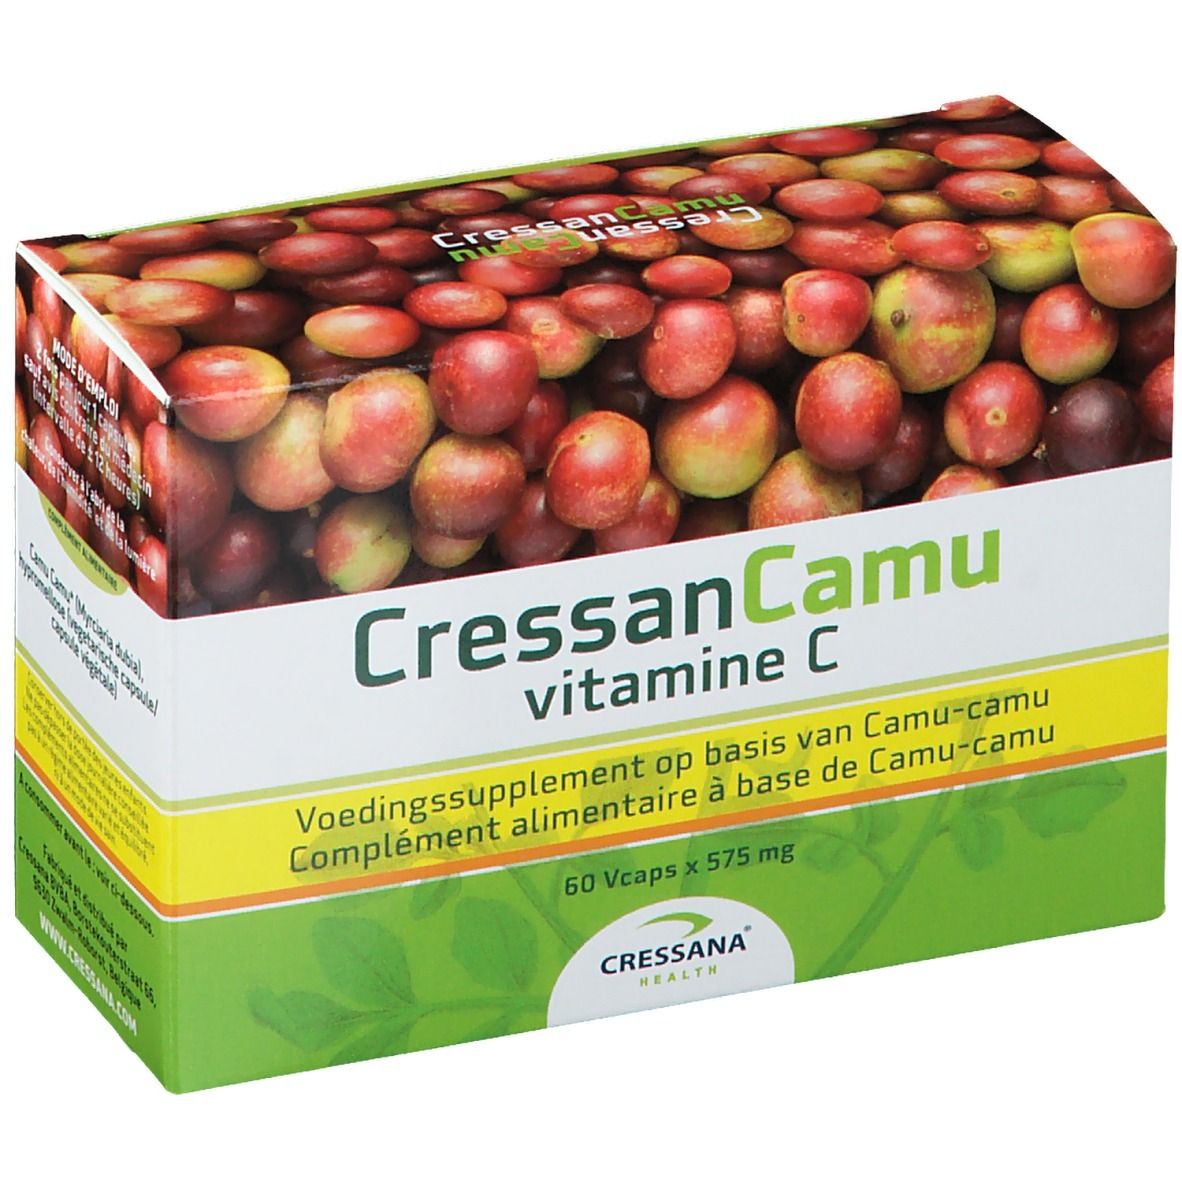 Image of CressanCamu Vitamin C